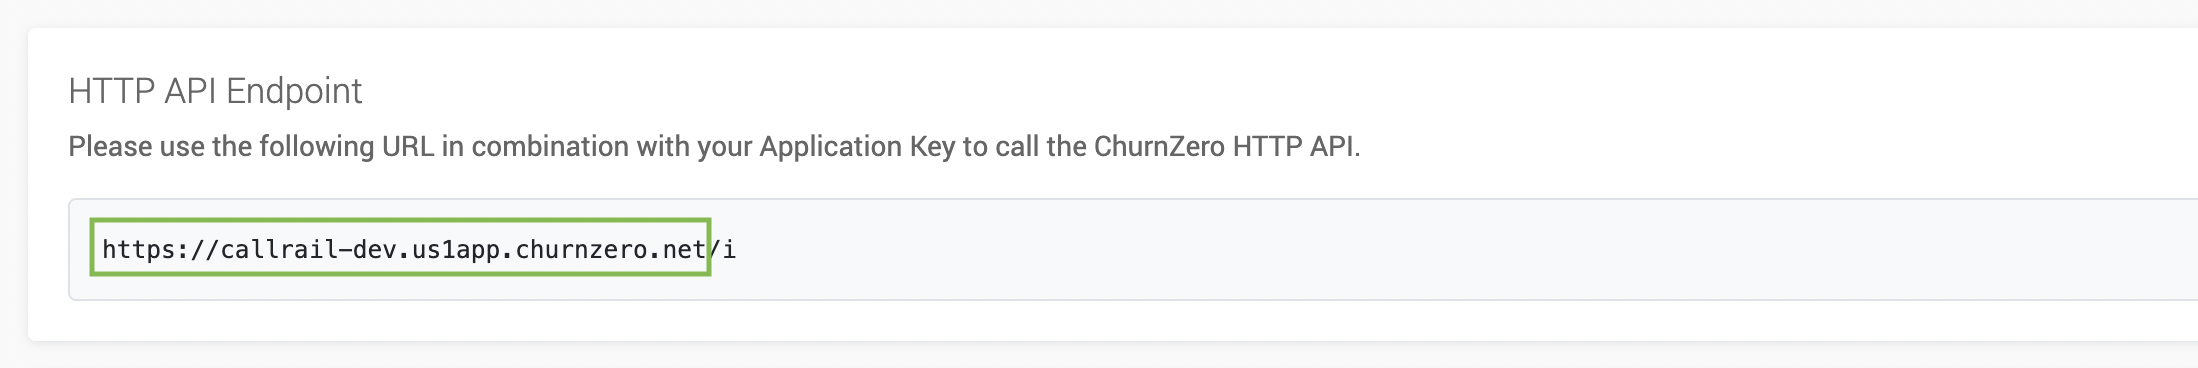 ChurnZero App URL